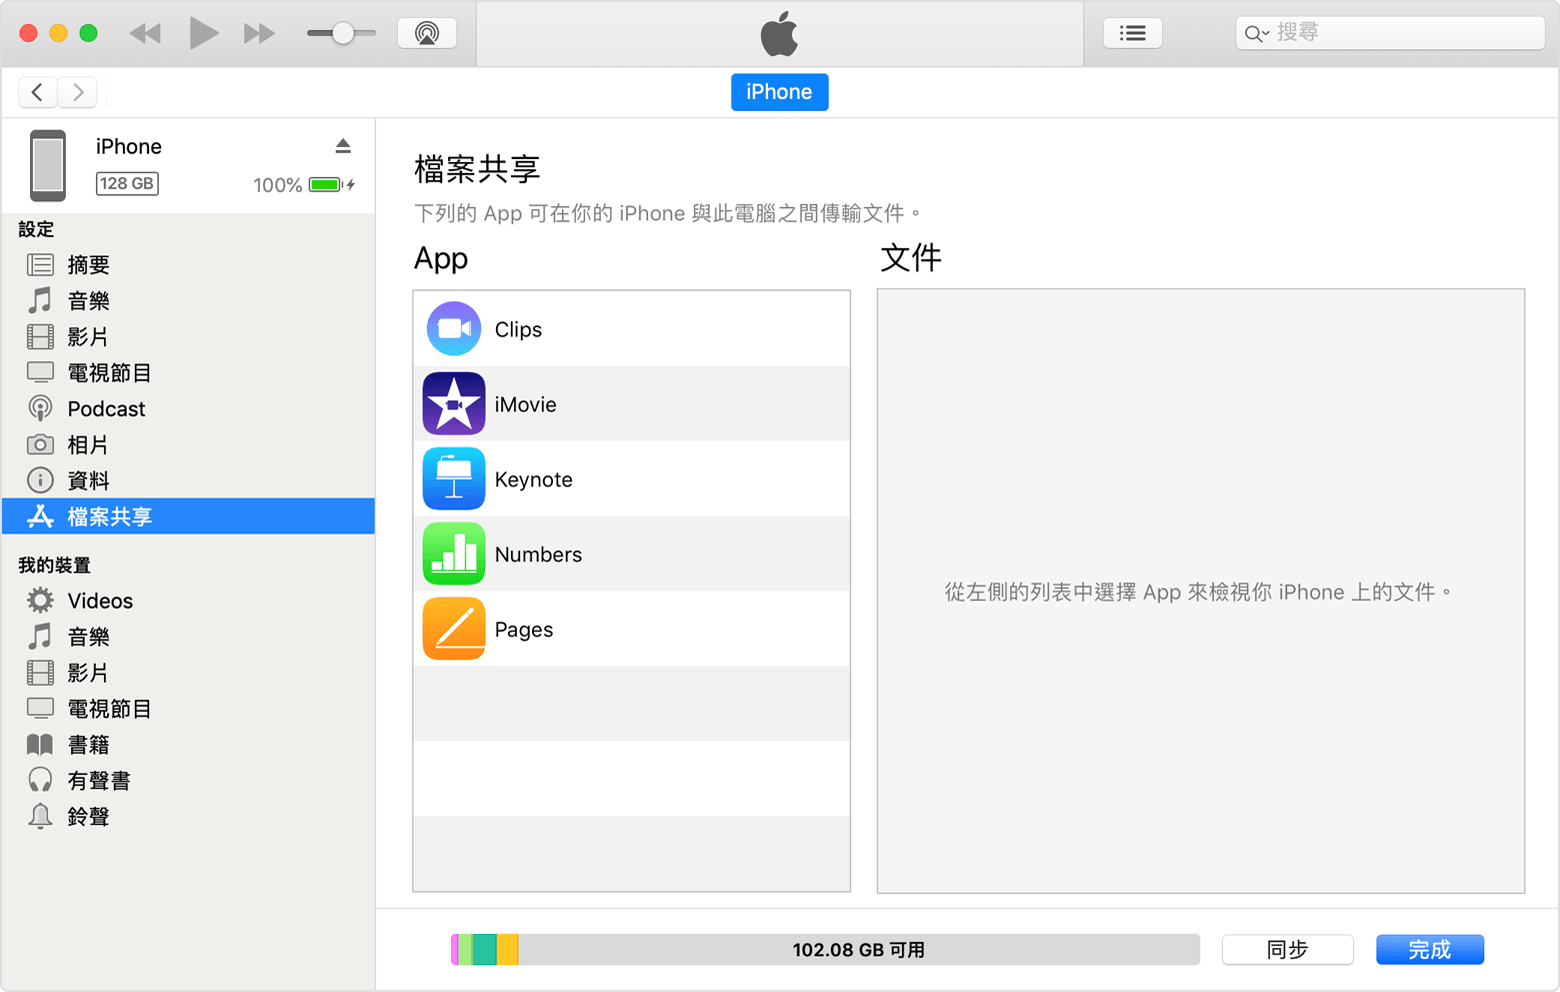 iTunes 視窗顯示已連接 iPhone，並已選擇列表中的「檔案分享」。